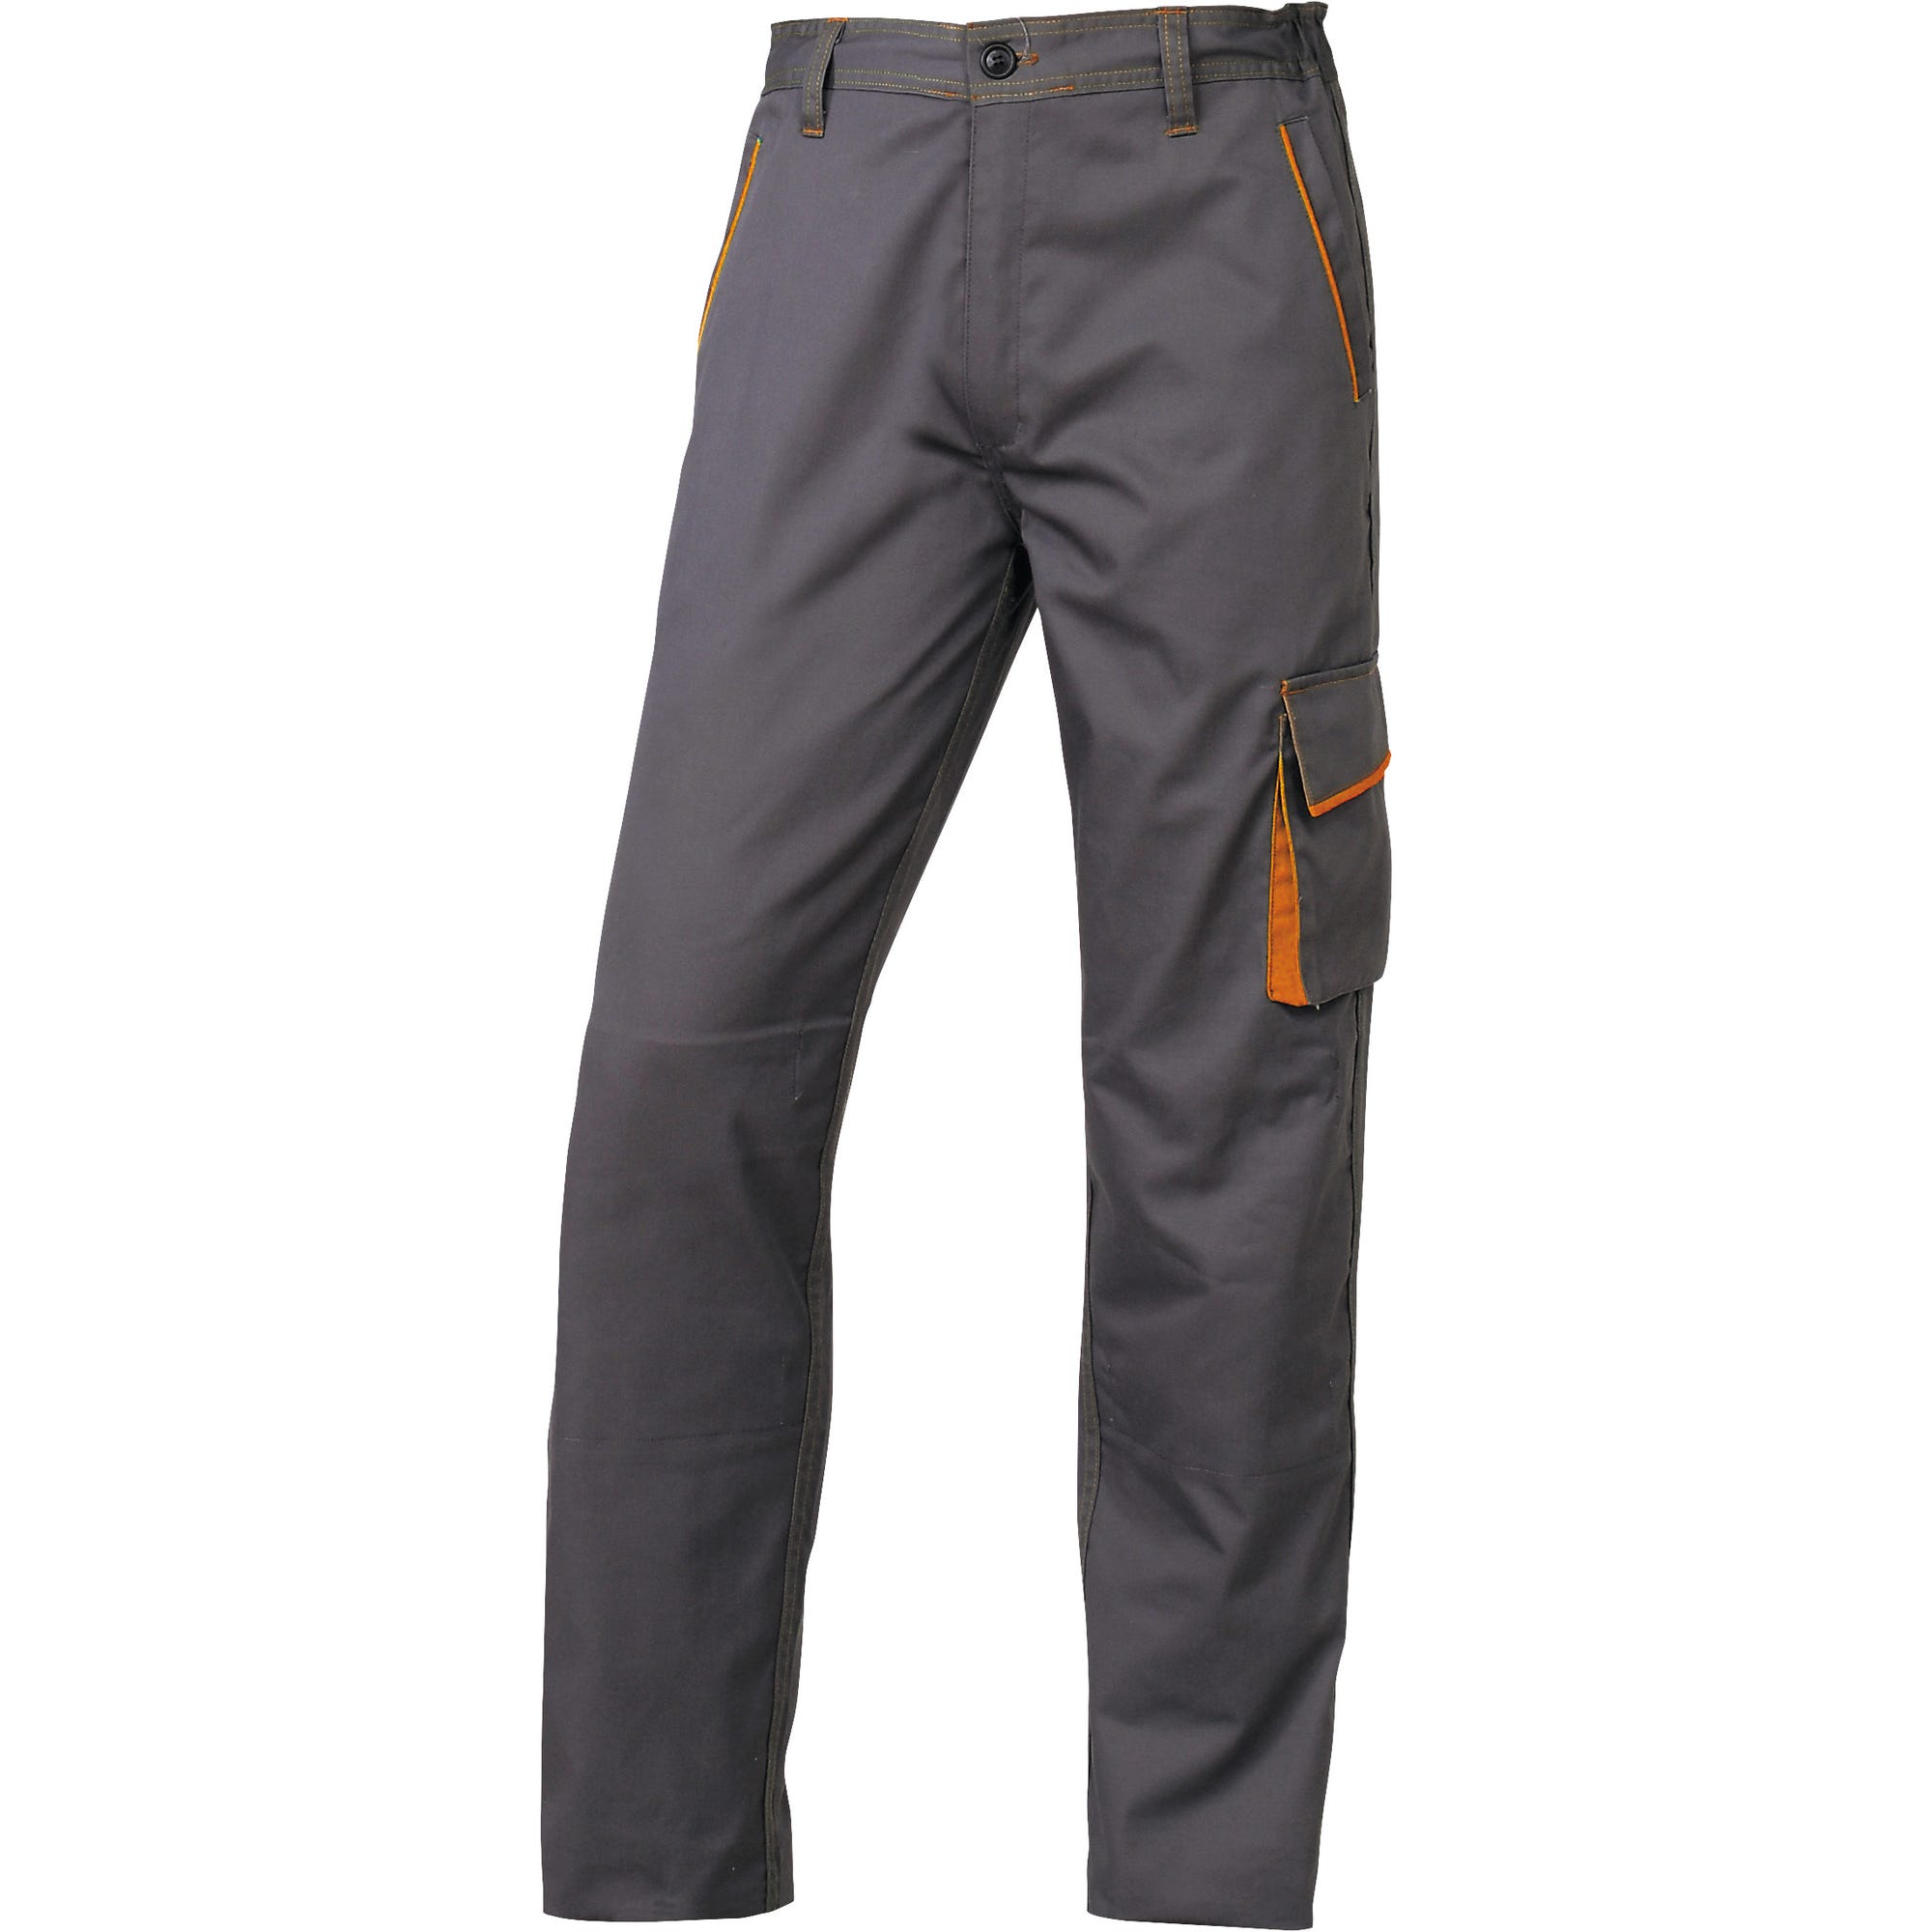 Pantalon de travail gris T.L Mach6 - DELTA PLUS 0